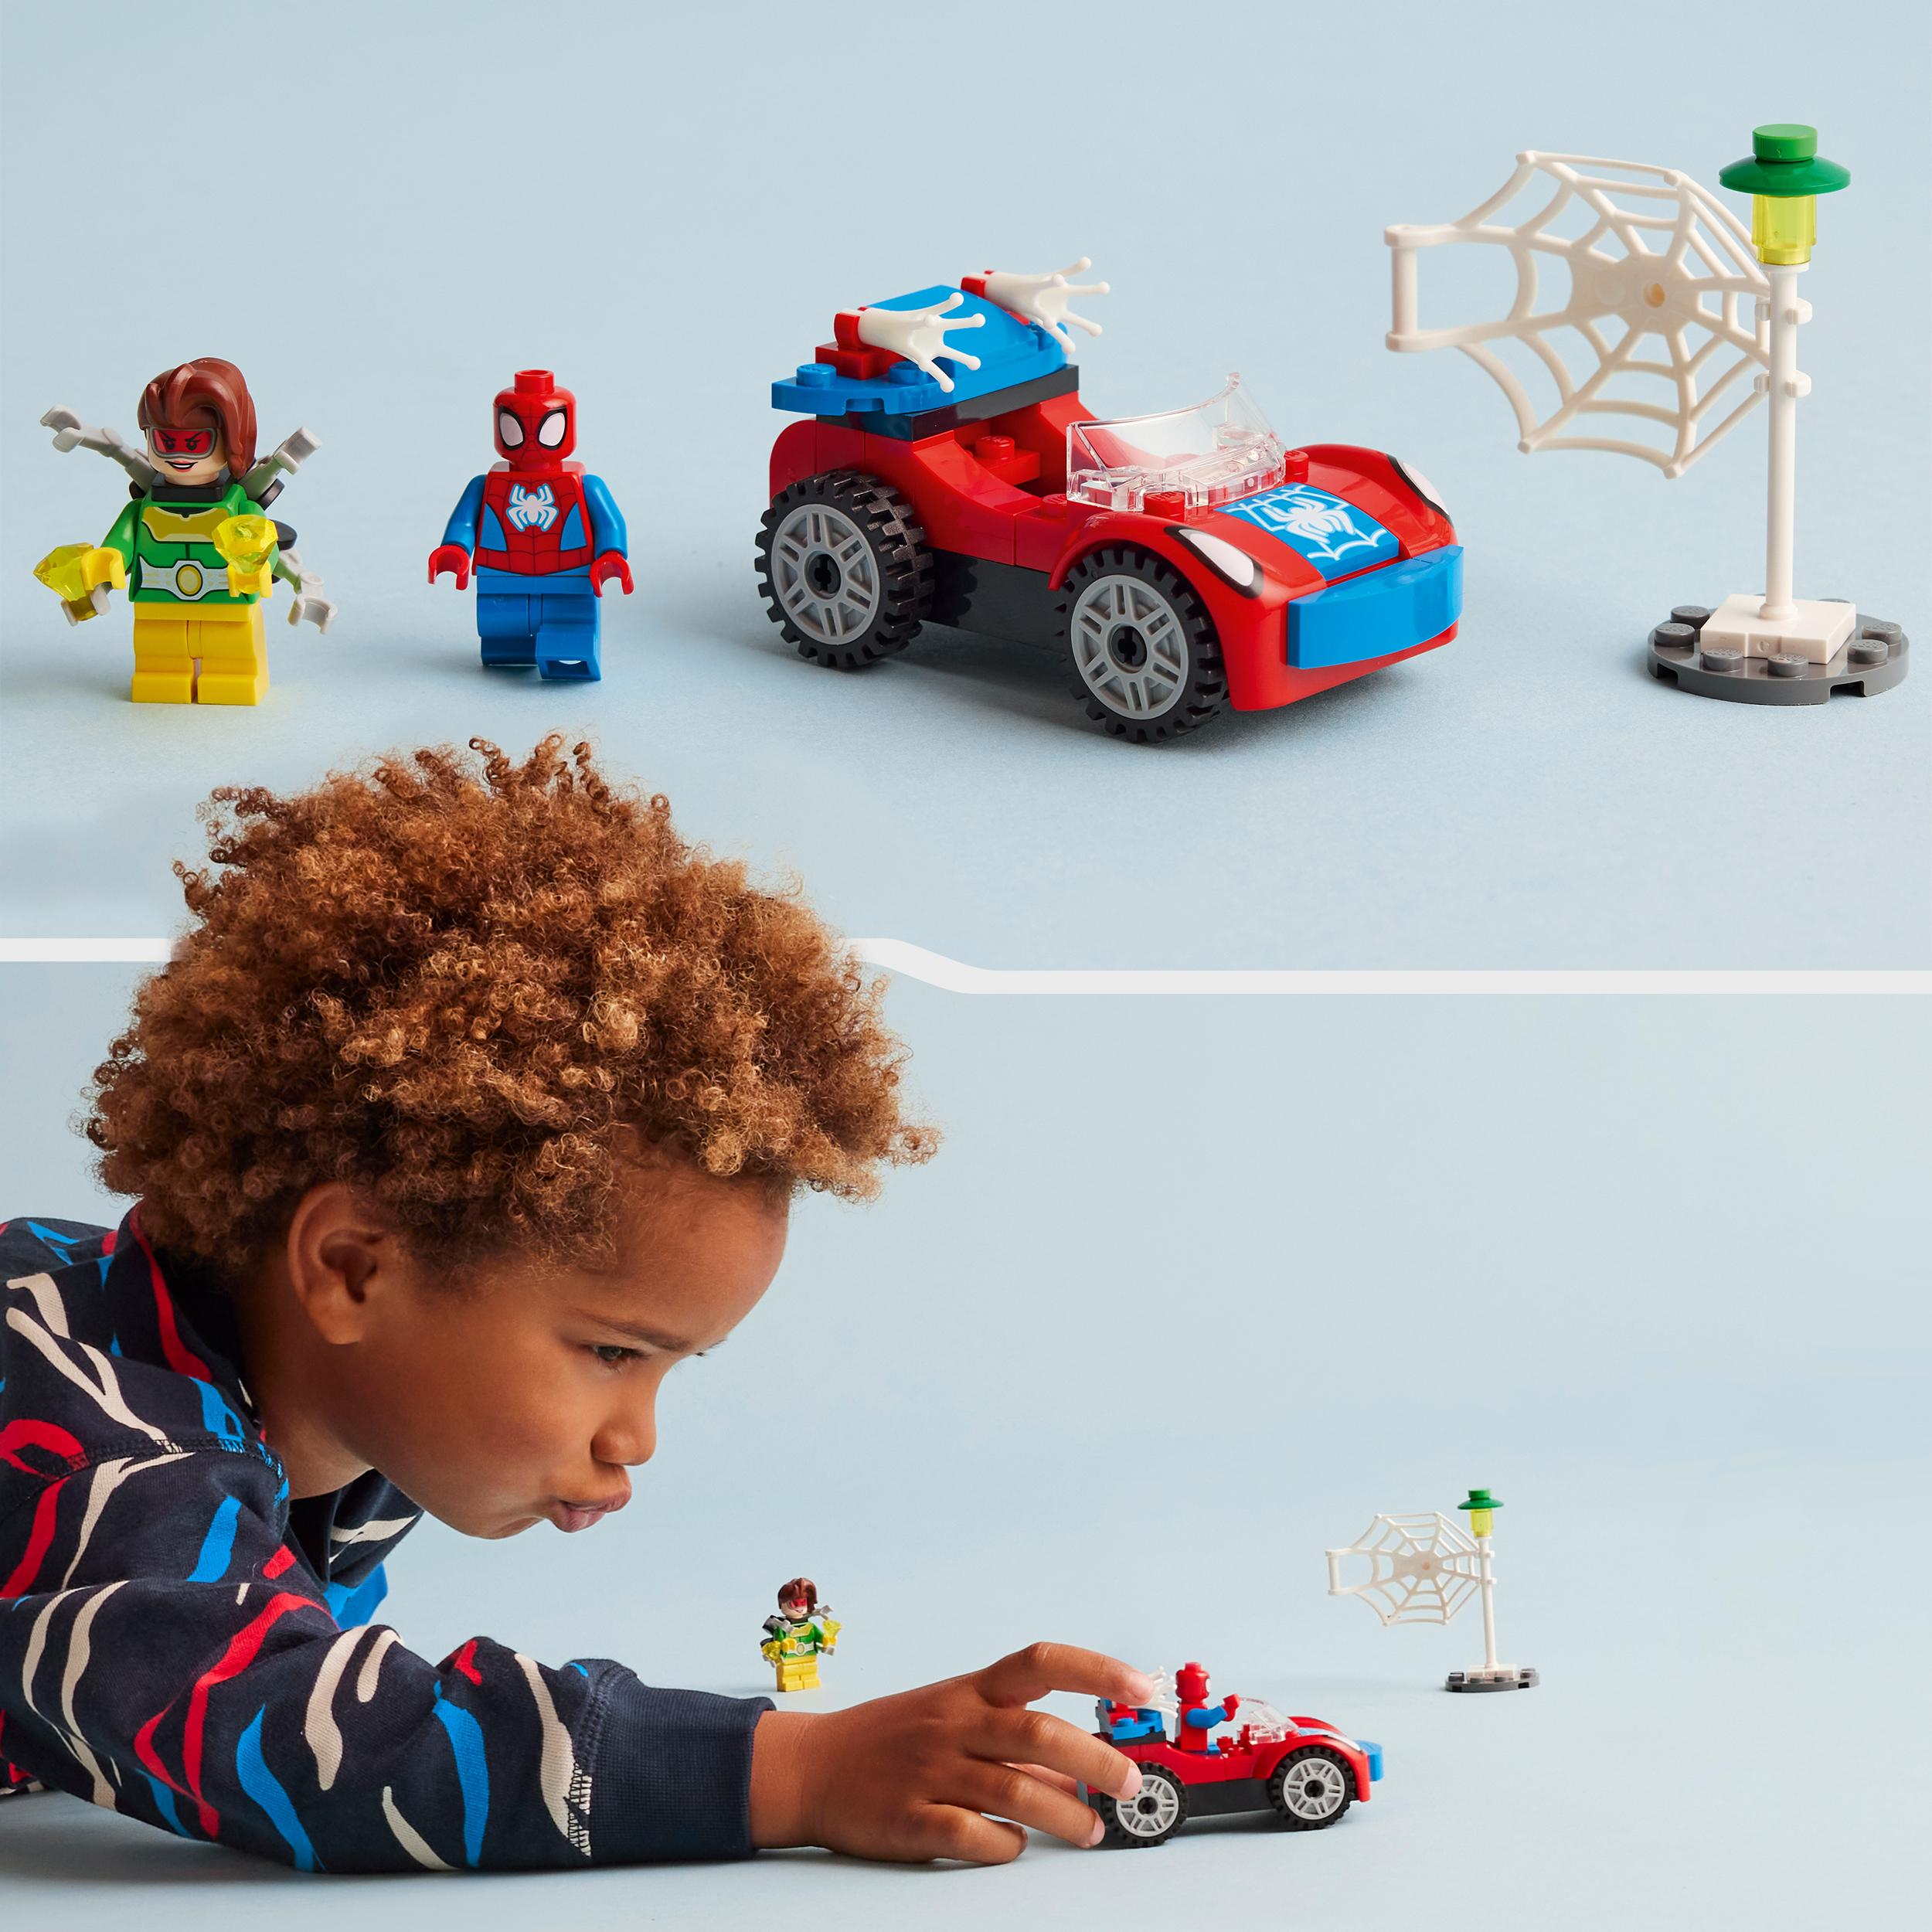 Auto Spider-Mans Mehrfarbig LEGO Bausatz, Doc und Marvel Ock 10789